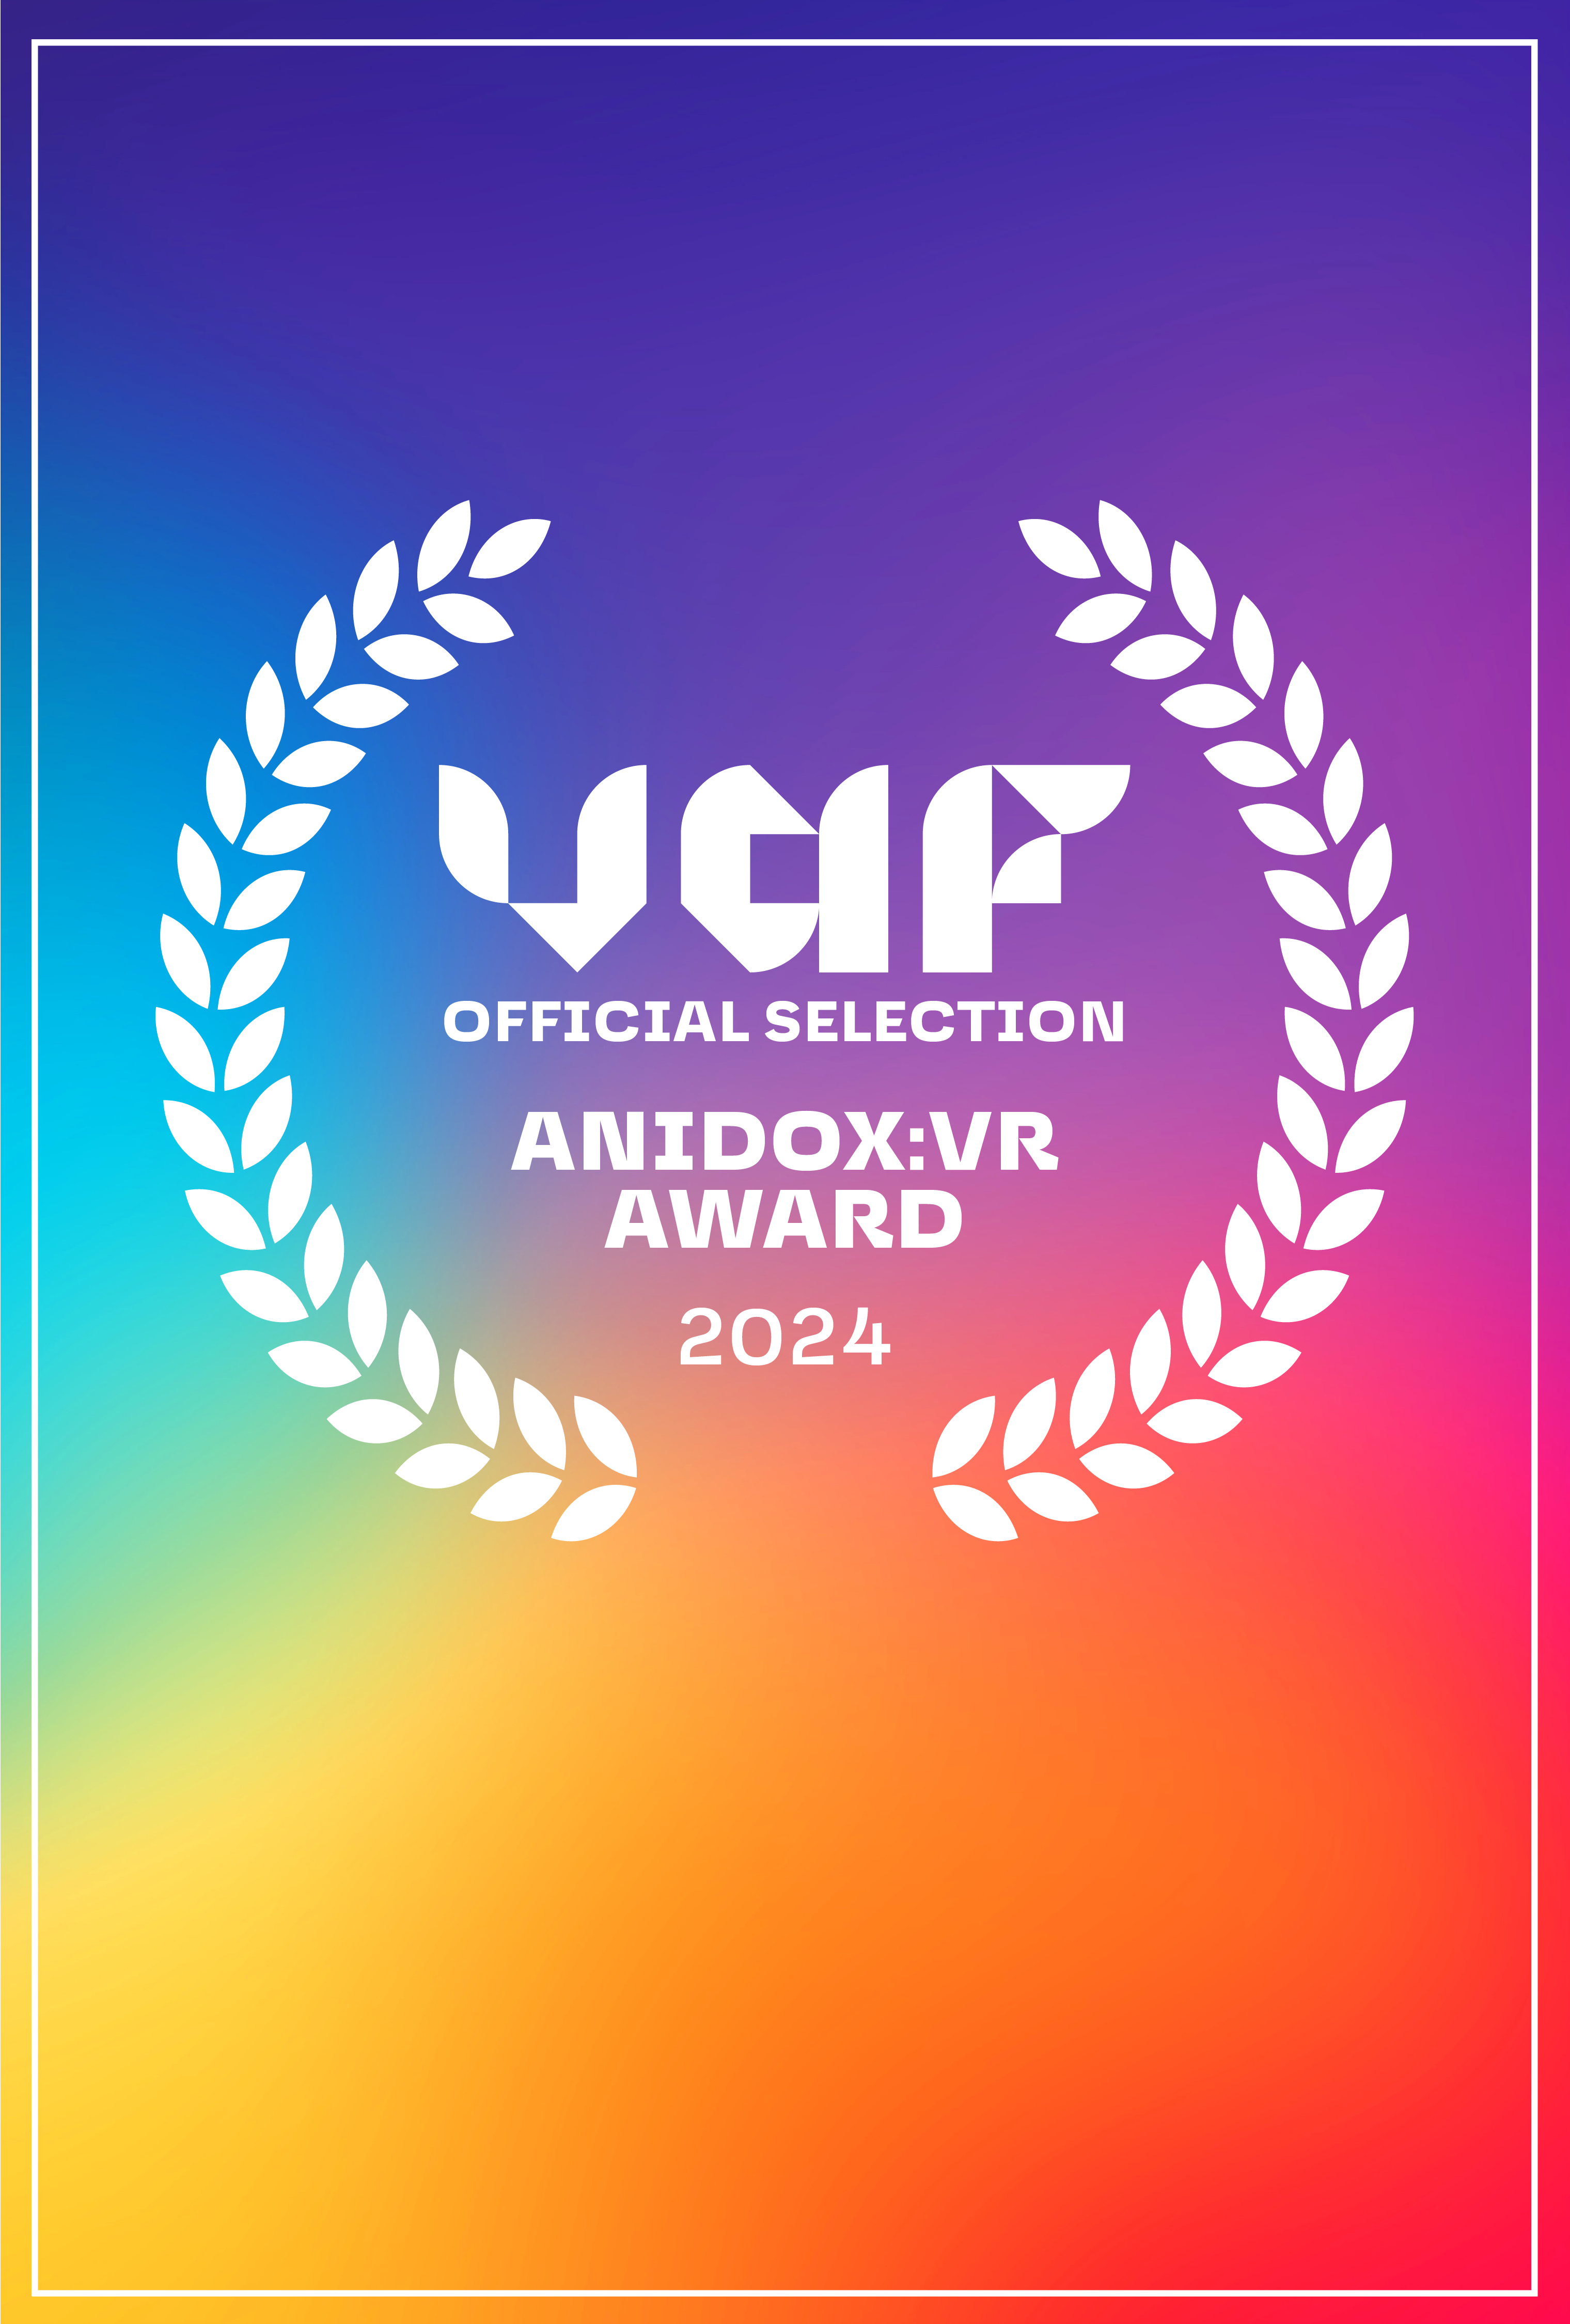 Laurels af VAF Anidox:VR Award 2024 - på en farverig regnbue baggrund.